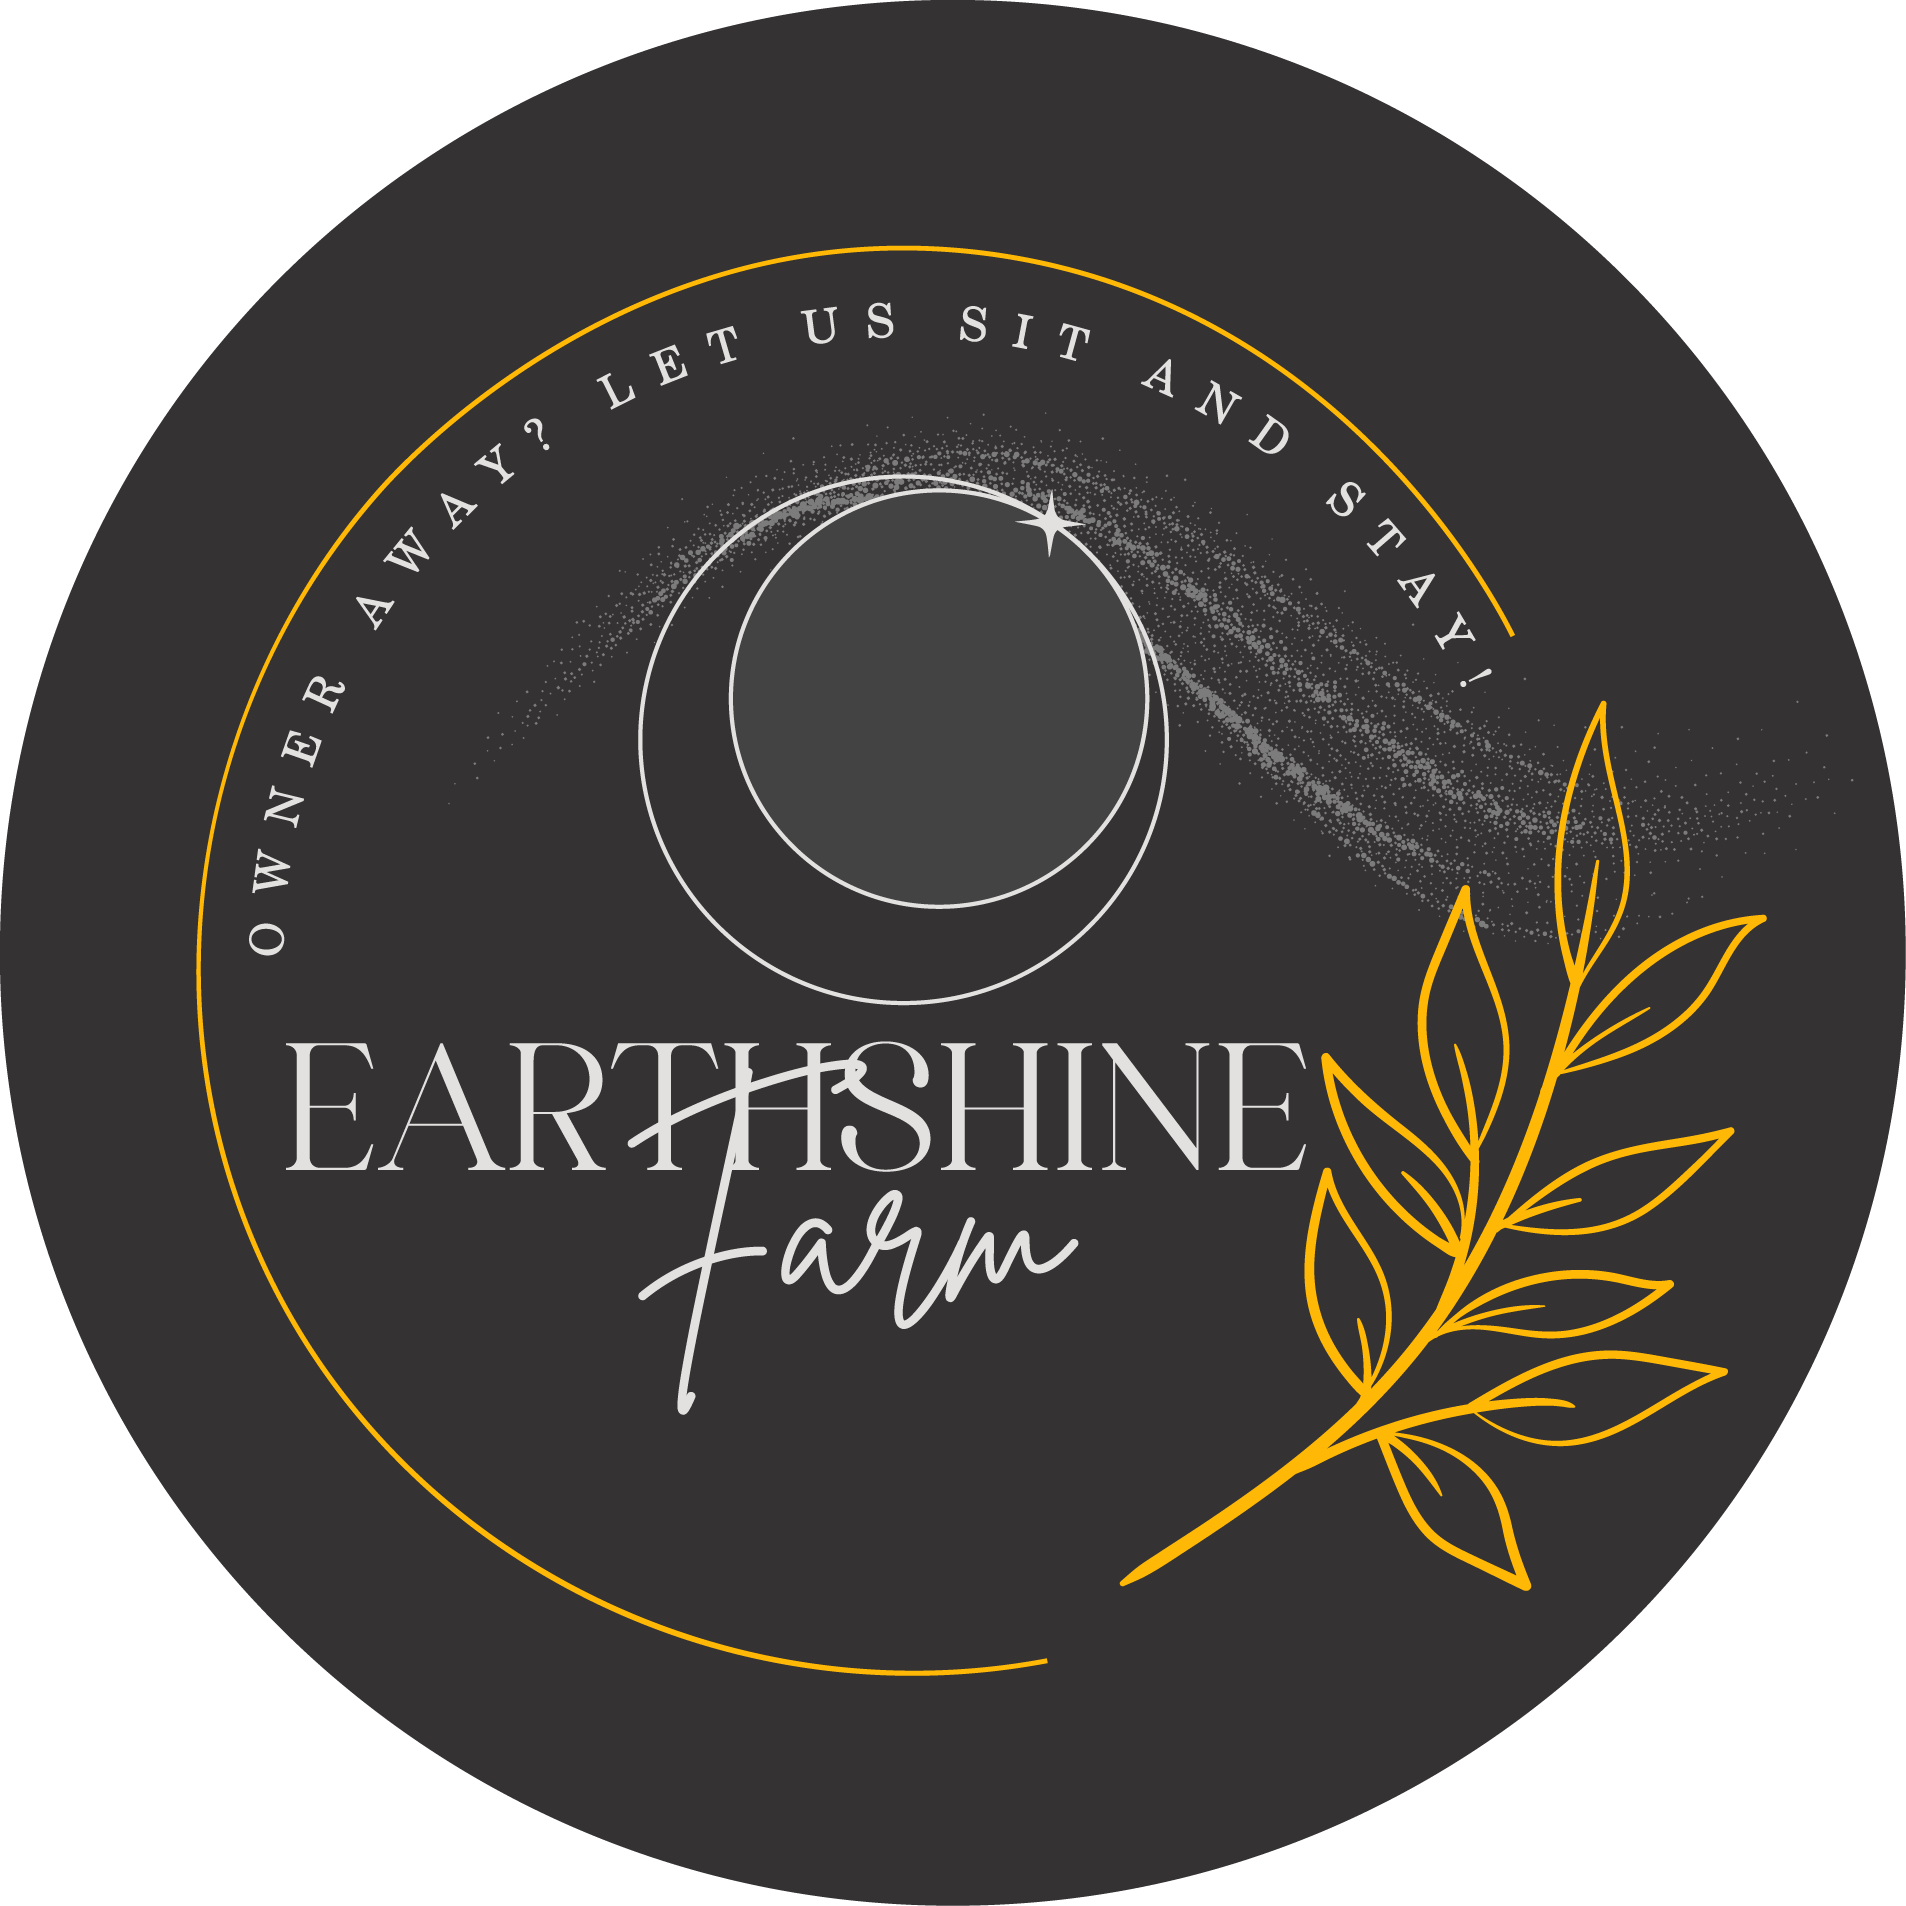 Earthshine Farm